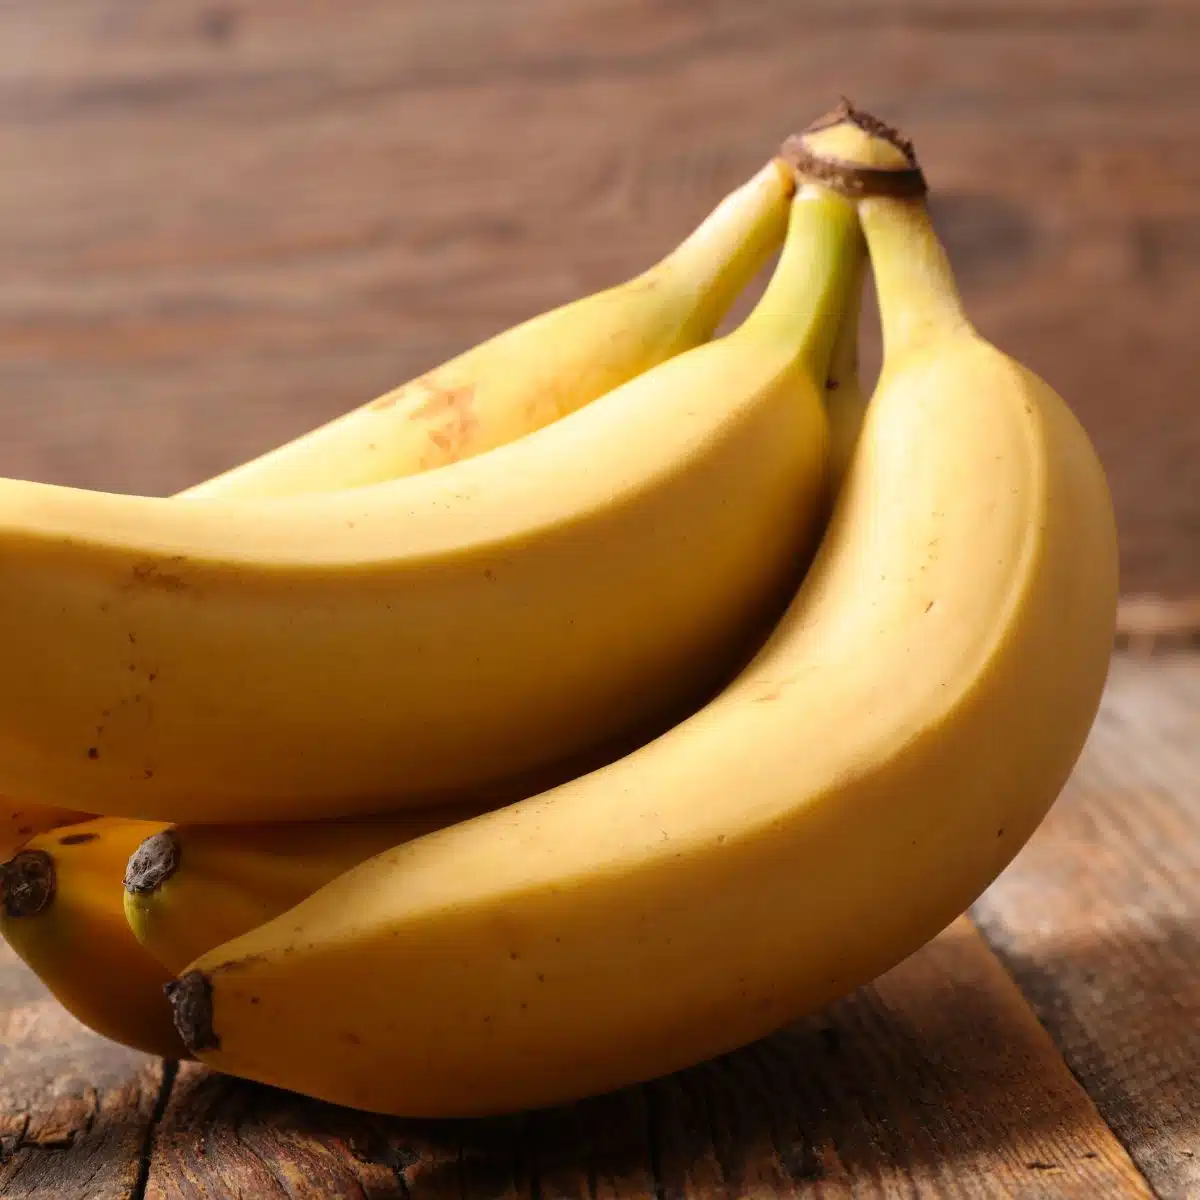 De bästa idéerna och alternativen för bananersättning att använda när du inte har färska bananer som dessa.